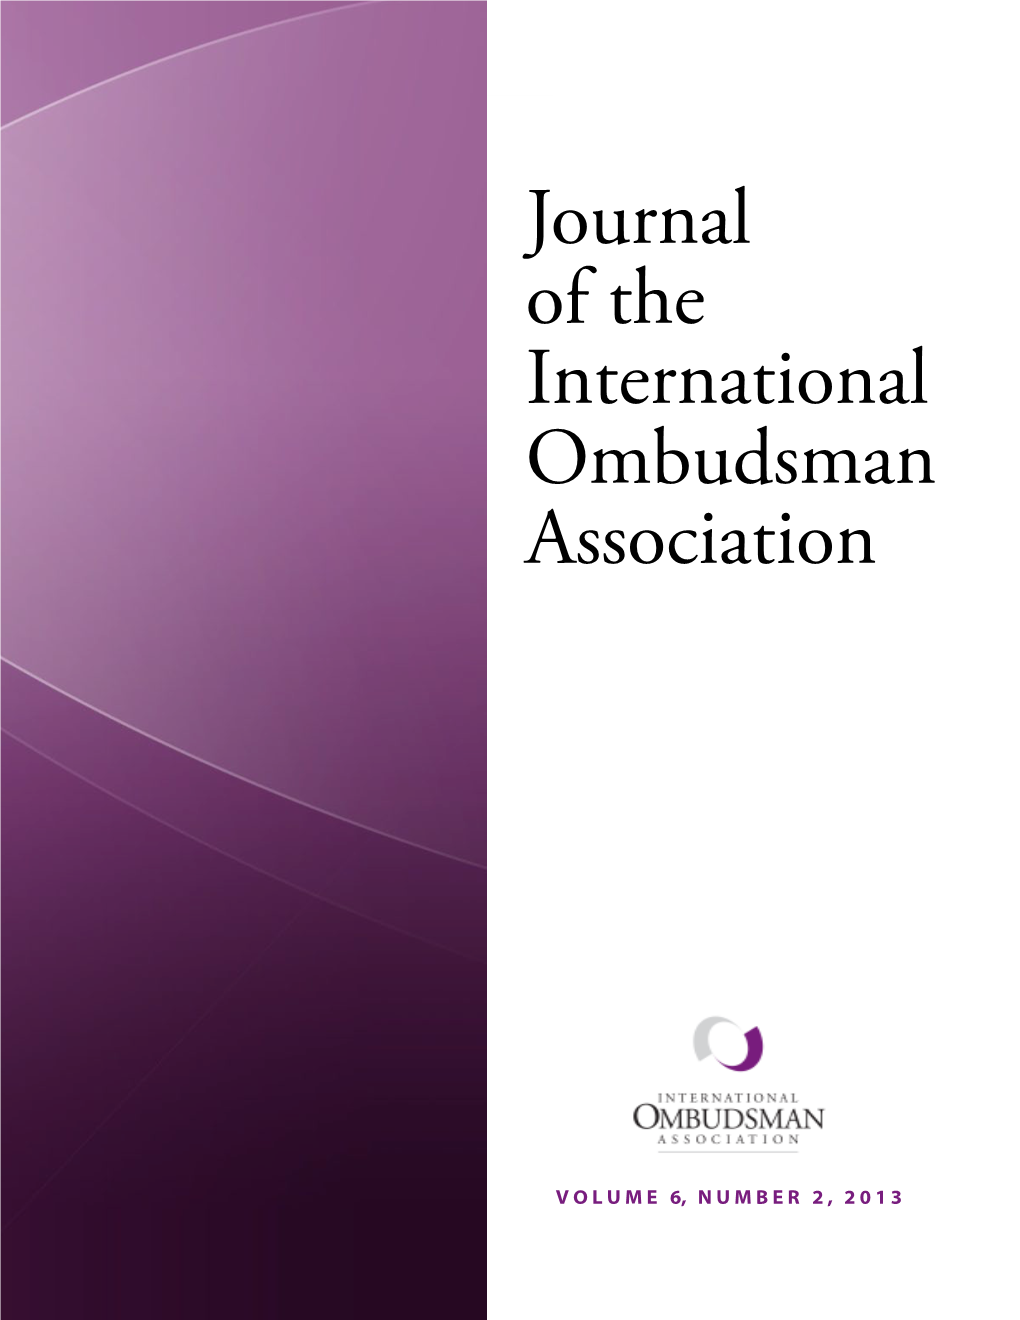 Journal of the International Ombudsman Association